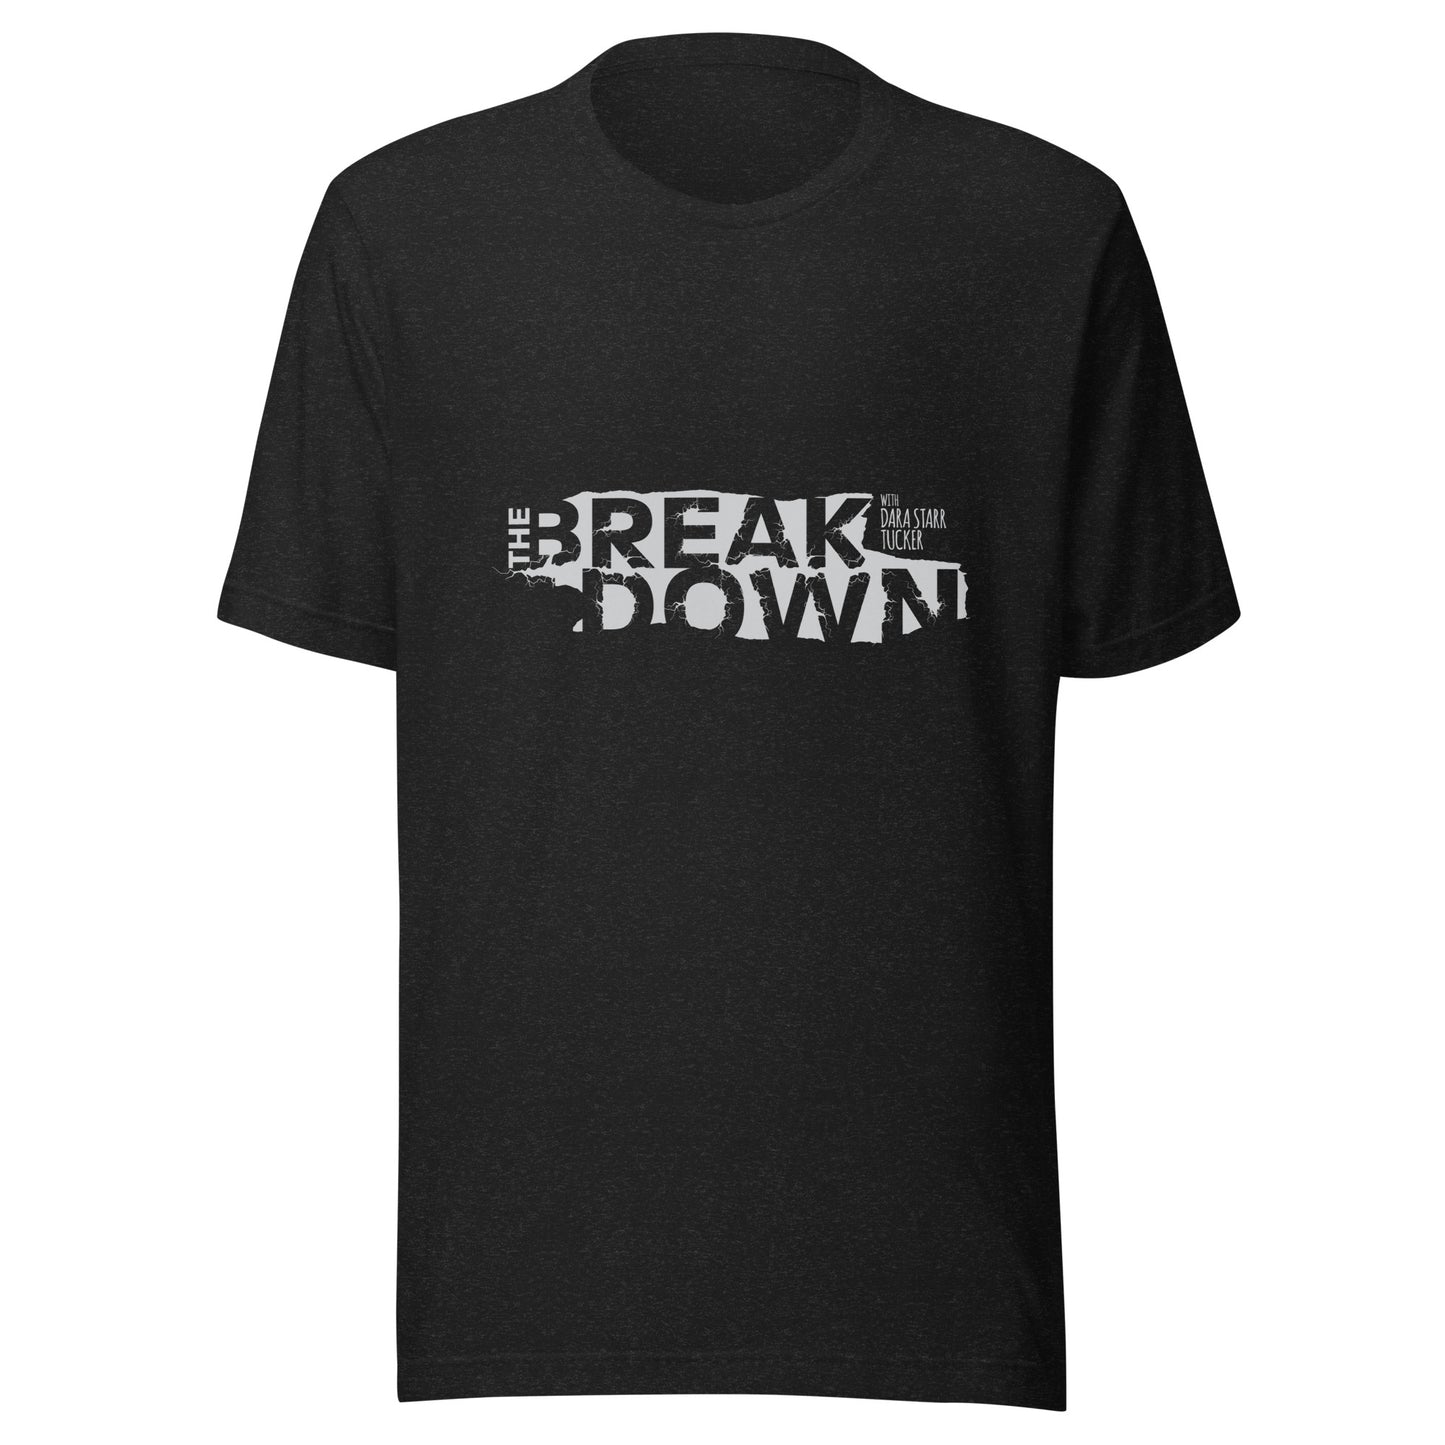 'The Breakdown' Men's Shirt - Black